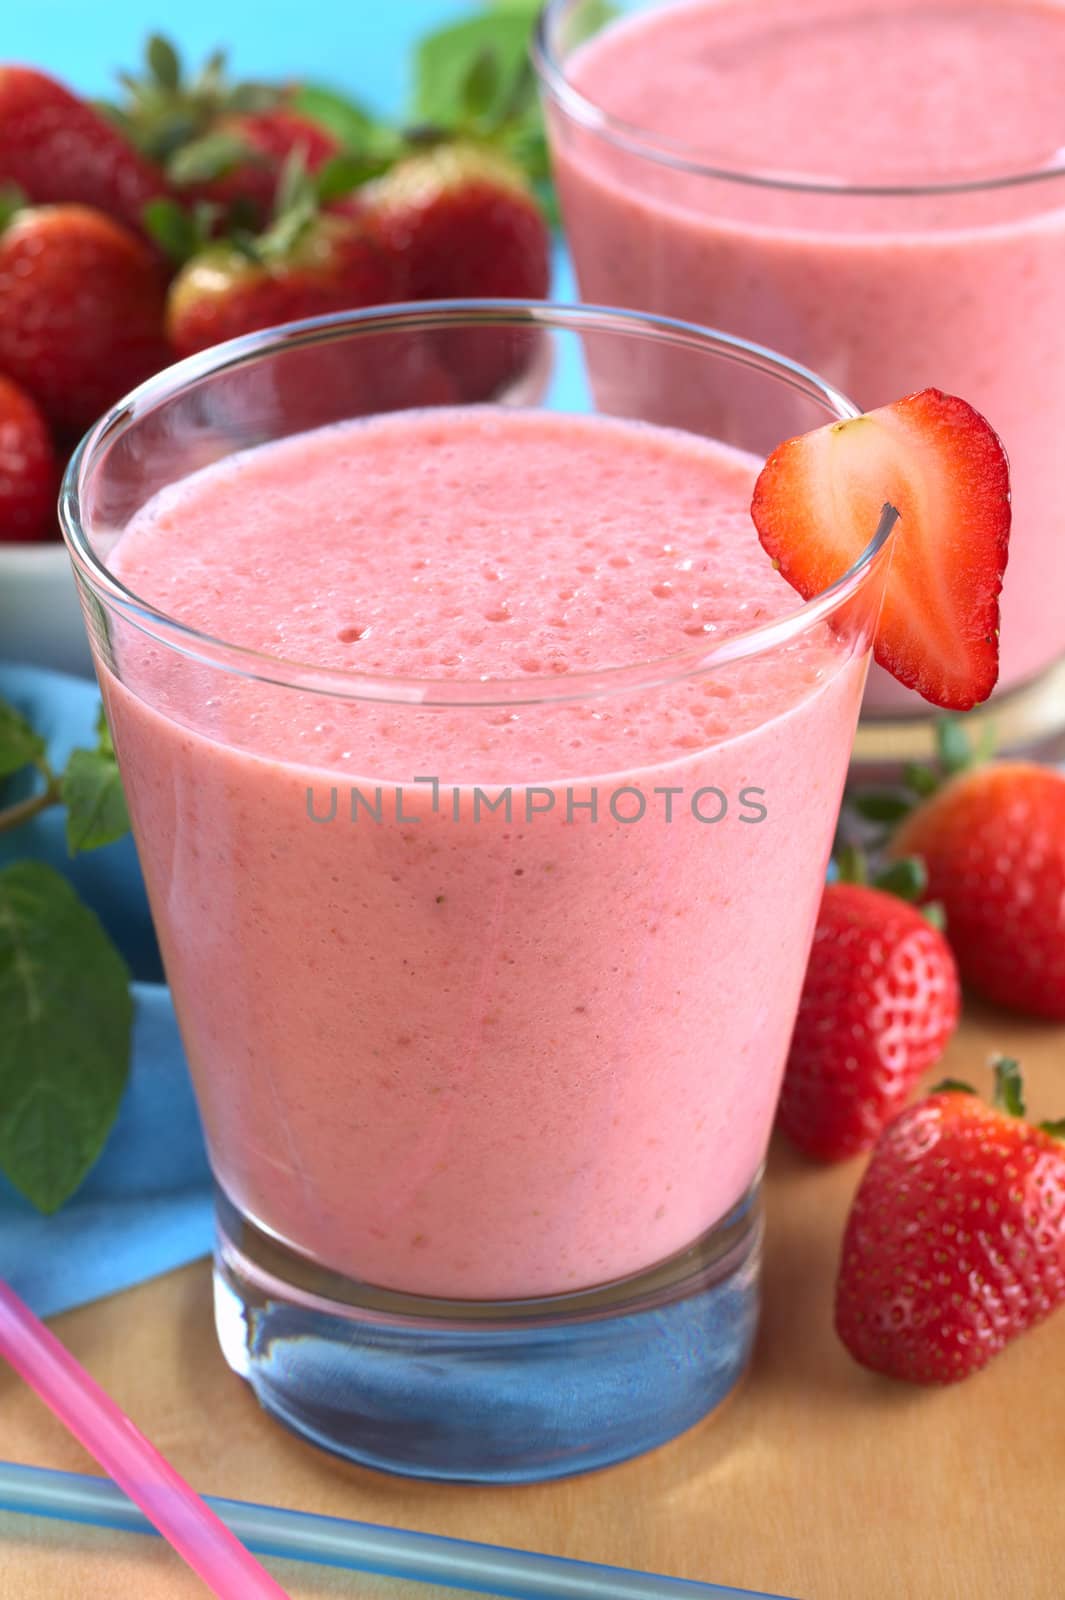 Strawberry Milkshake by ildi